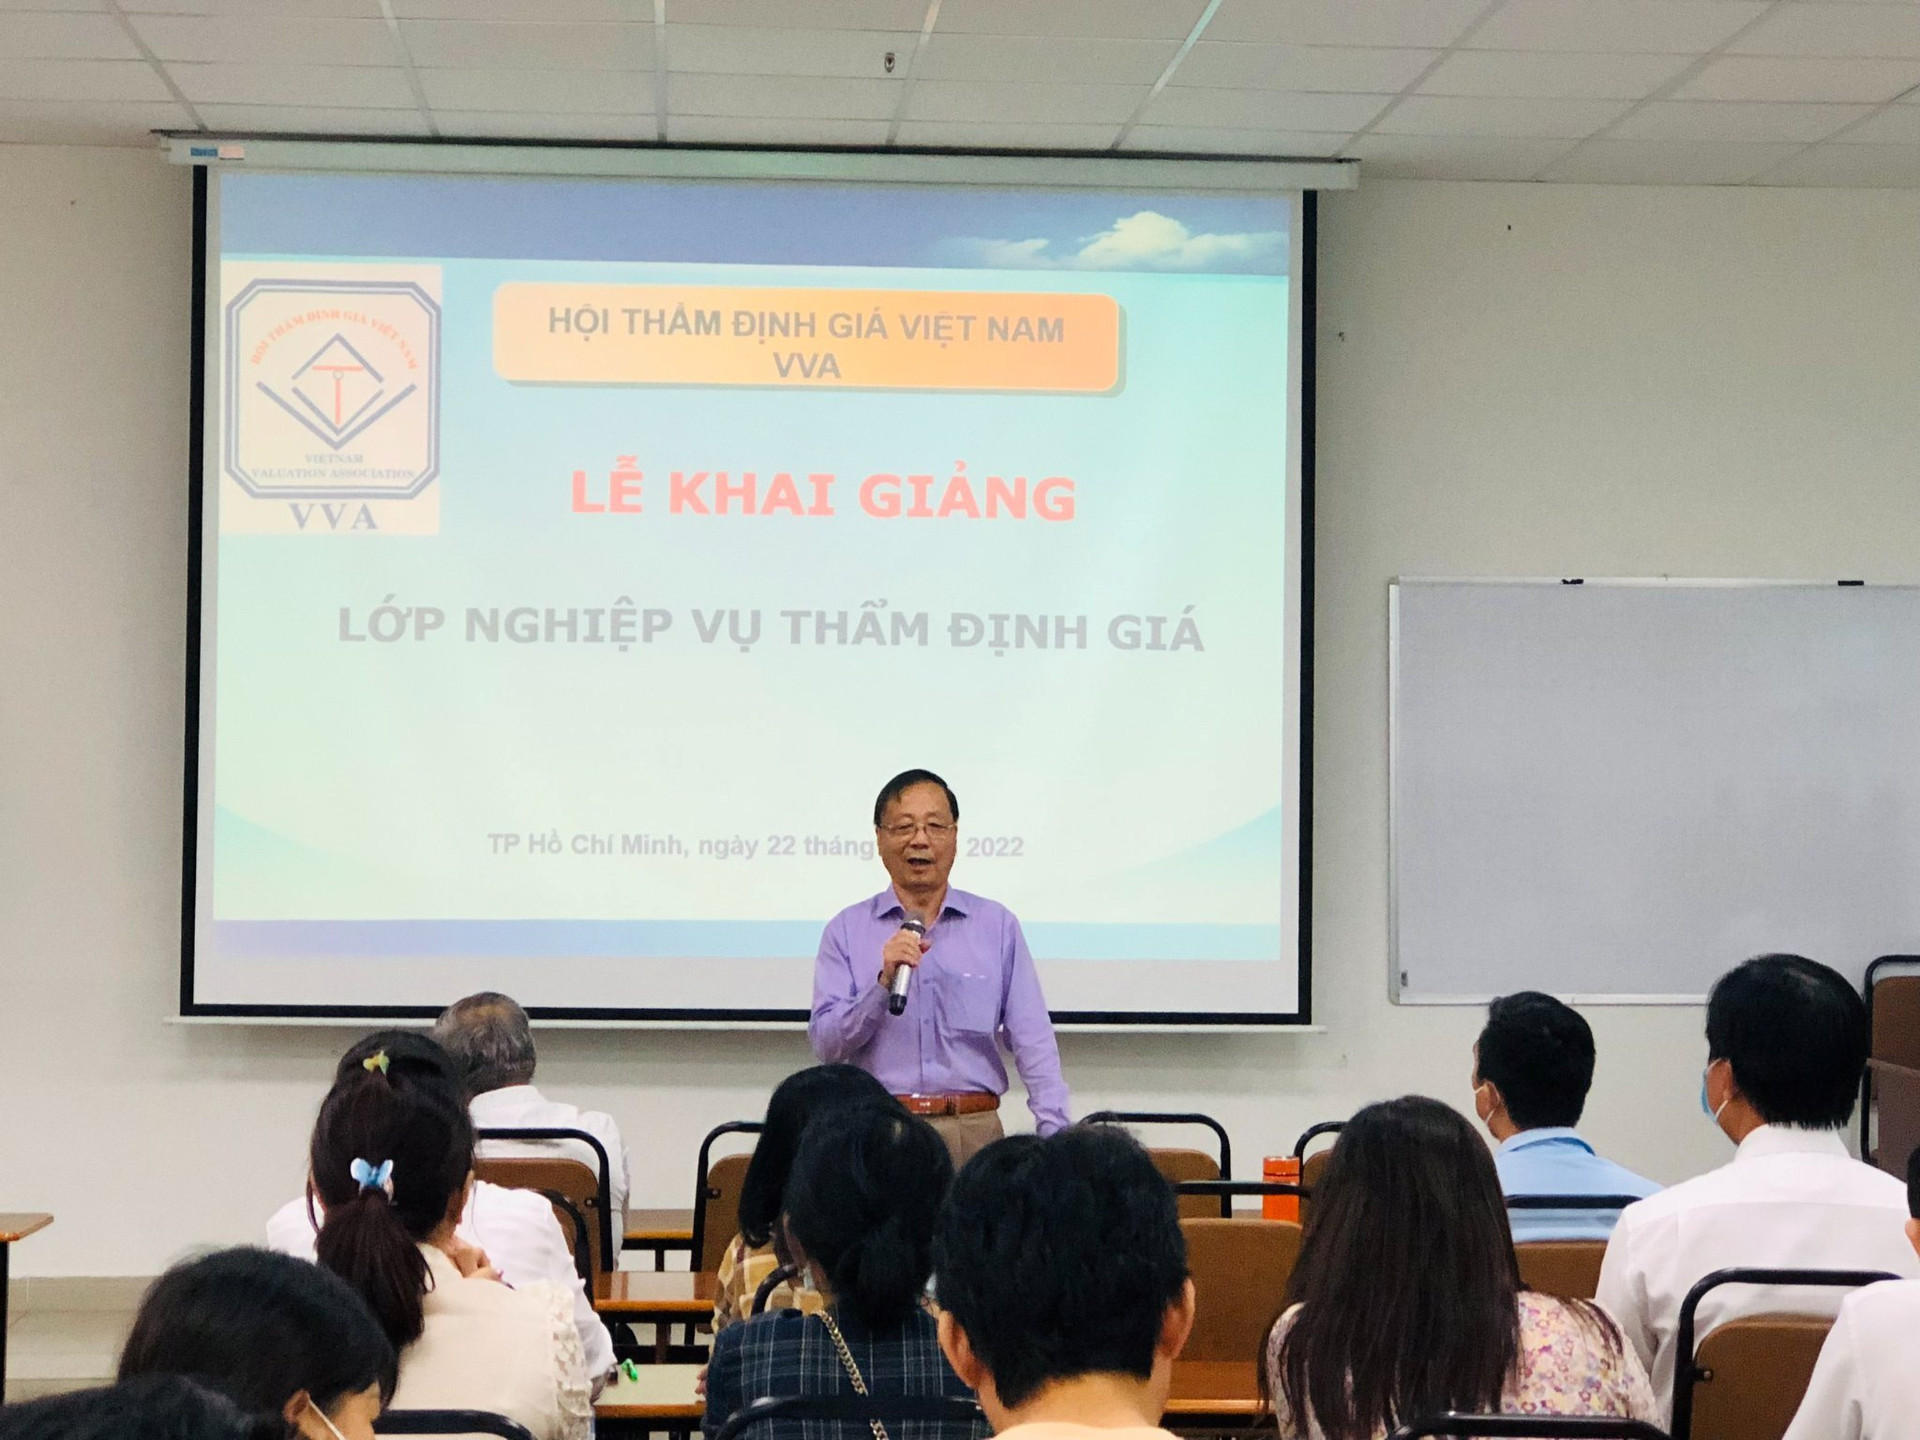 Hội Thẩm định giá Việt Nam chiêu sinh khóa học cấp chứng chỉ nghiệp vụ Thẩm định giá